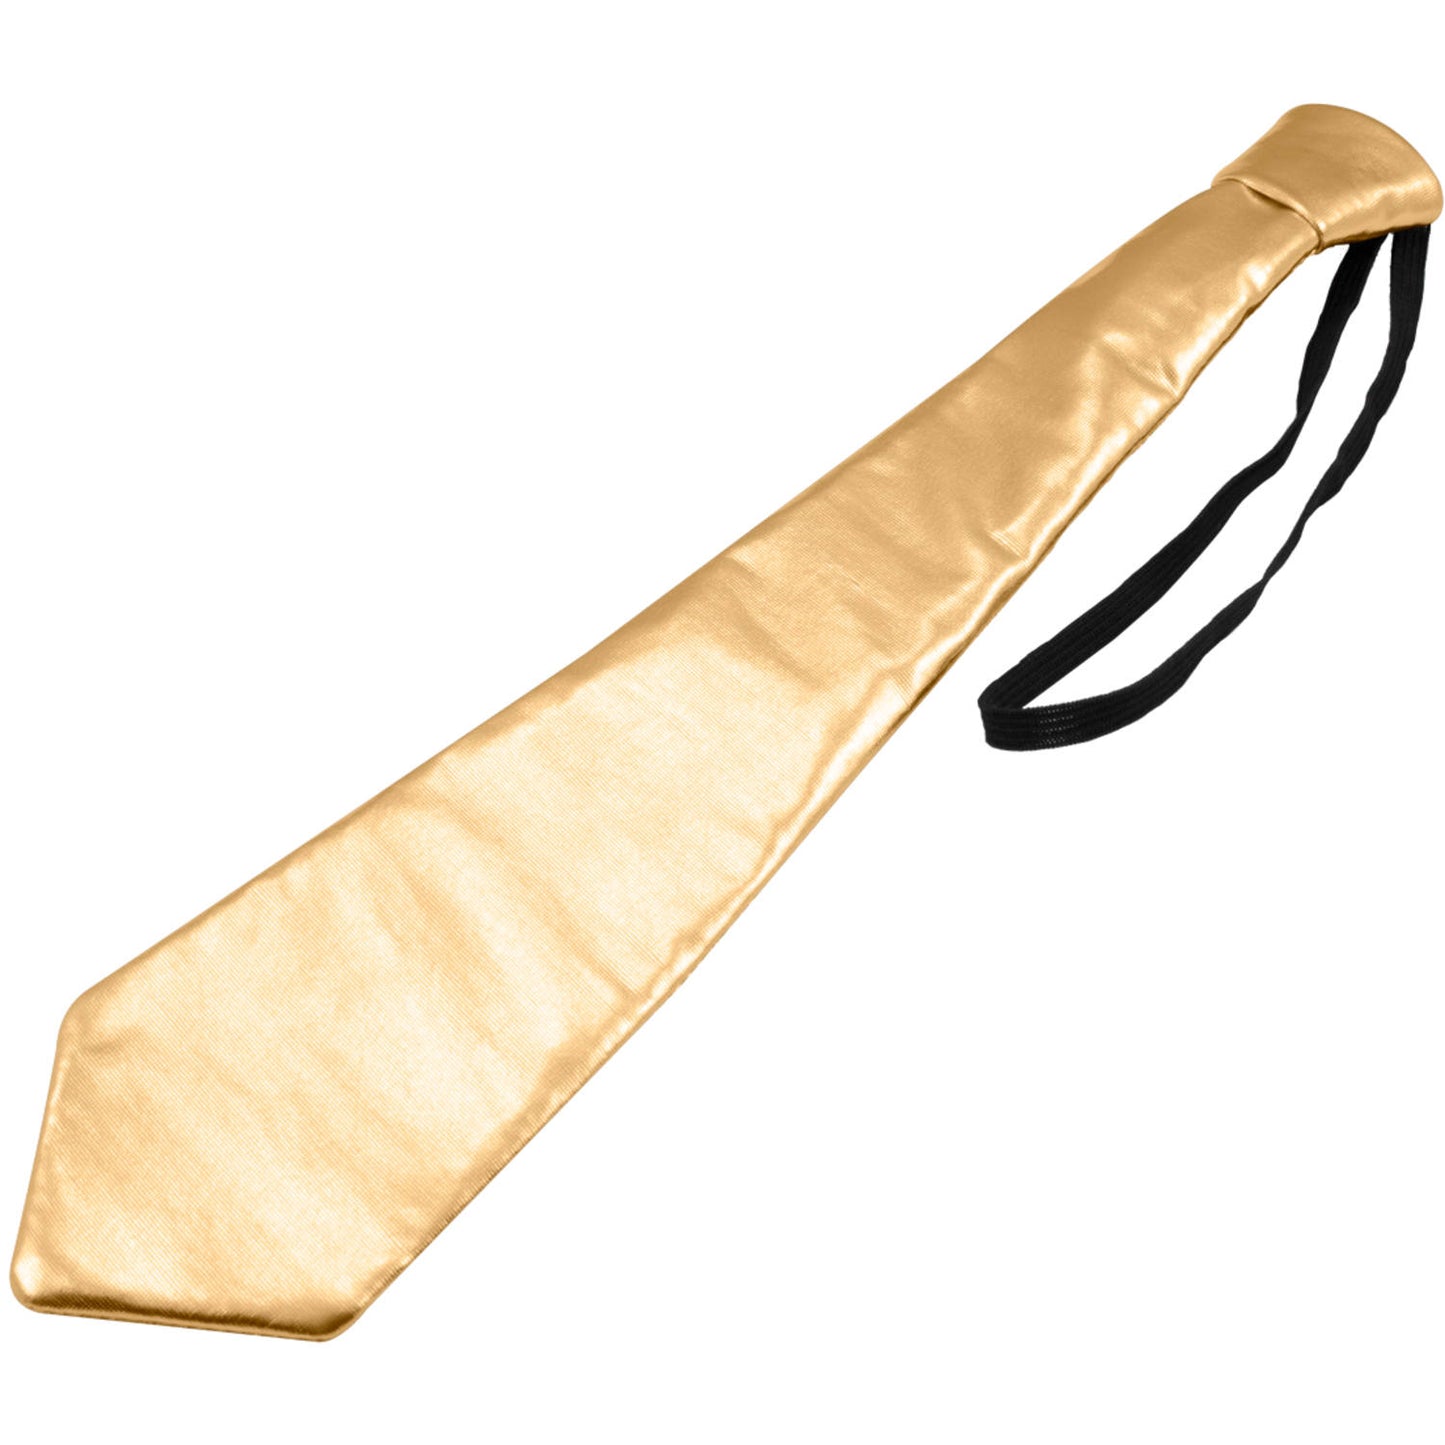 Metallinhohtoinen kravatti, kulta